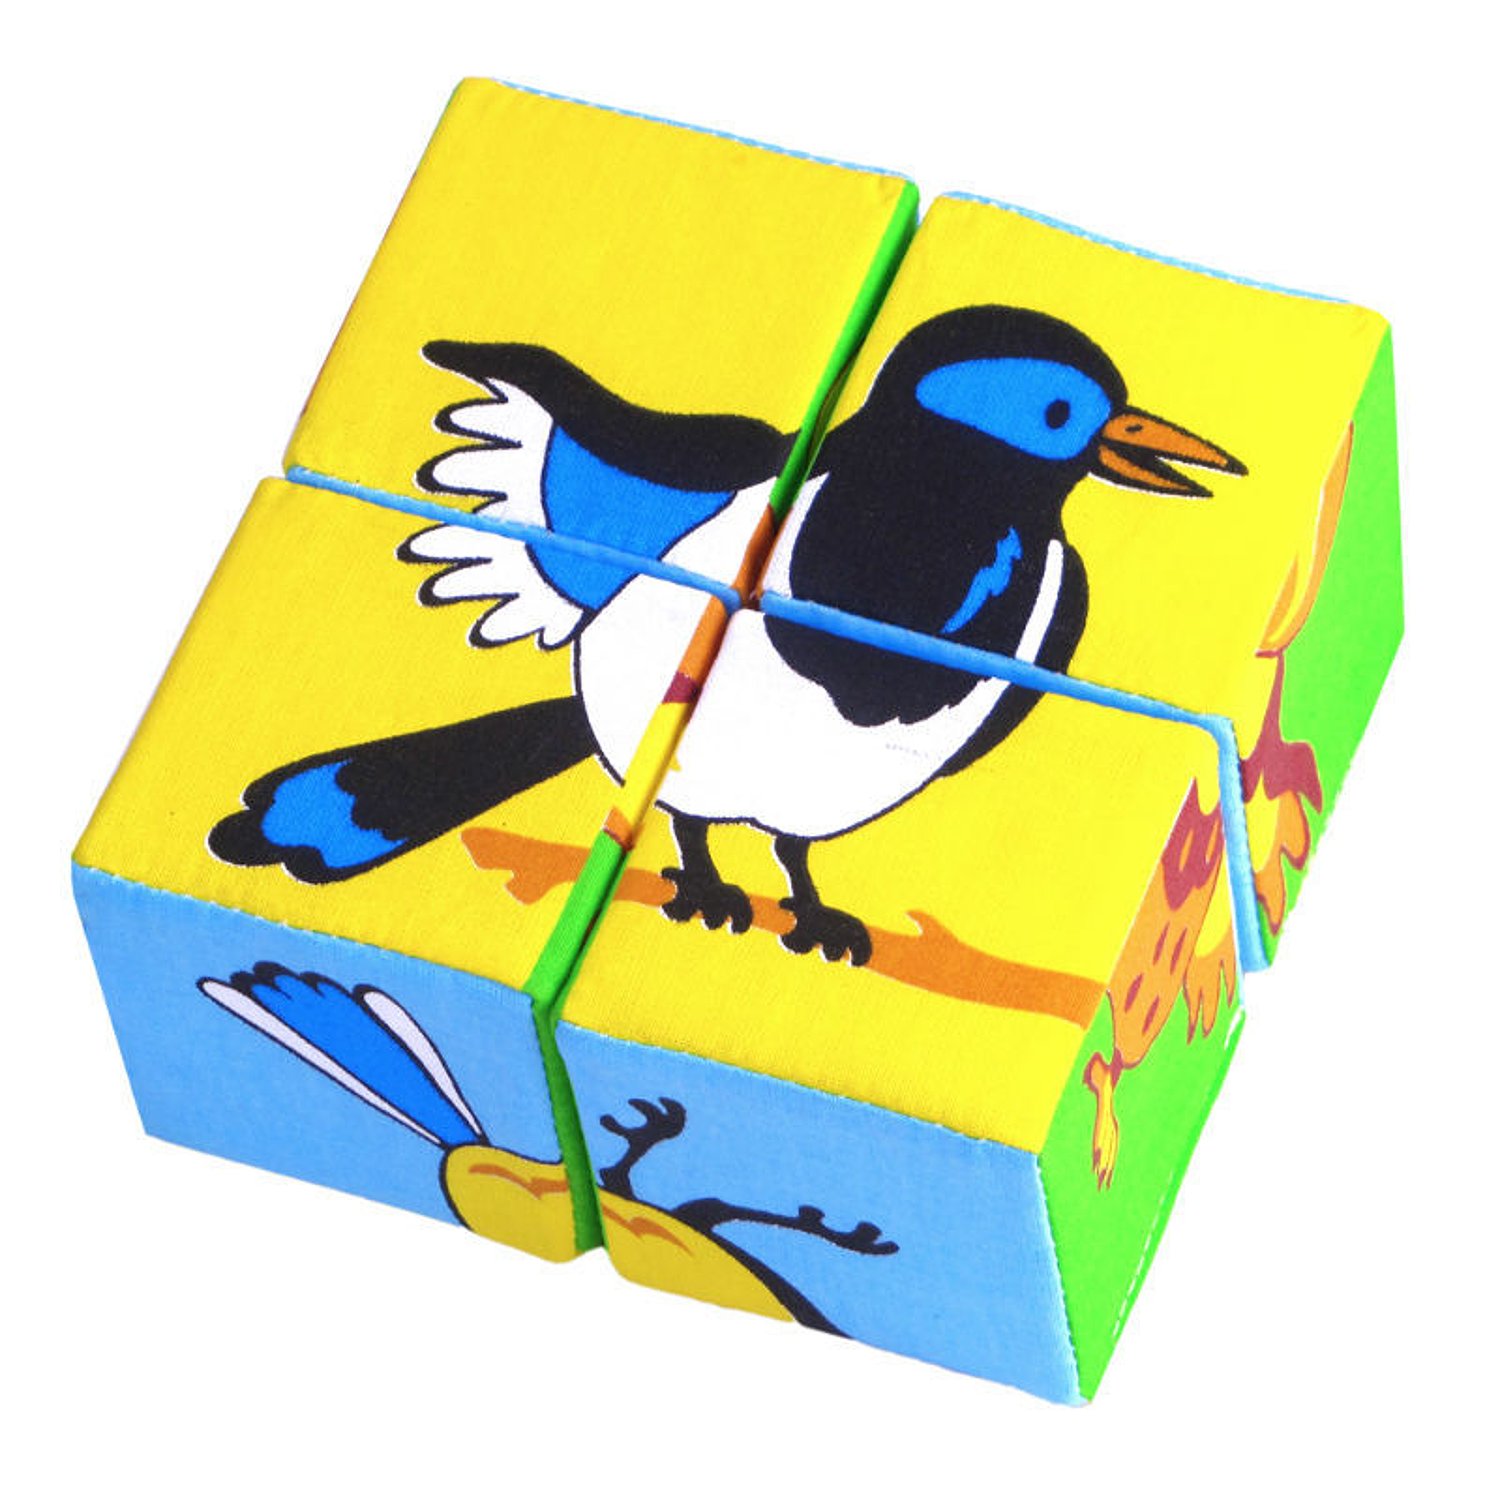 Puzzle bird. Кубики "Собери свой домик". Игрушка кубики Собери картинку птицы. Кубики-пазлы Мякиши Собери картинку птицы. Пазлы птицы.